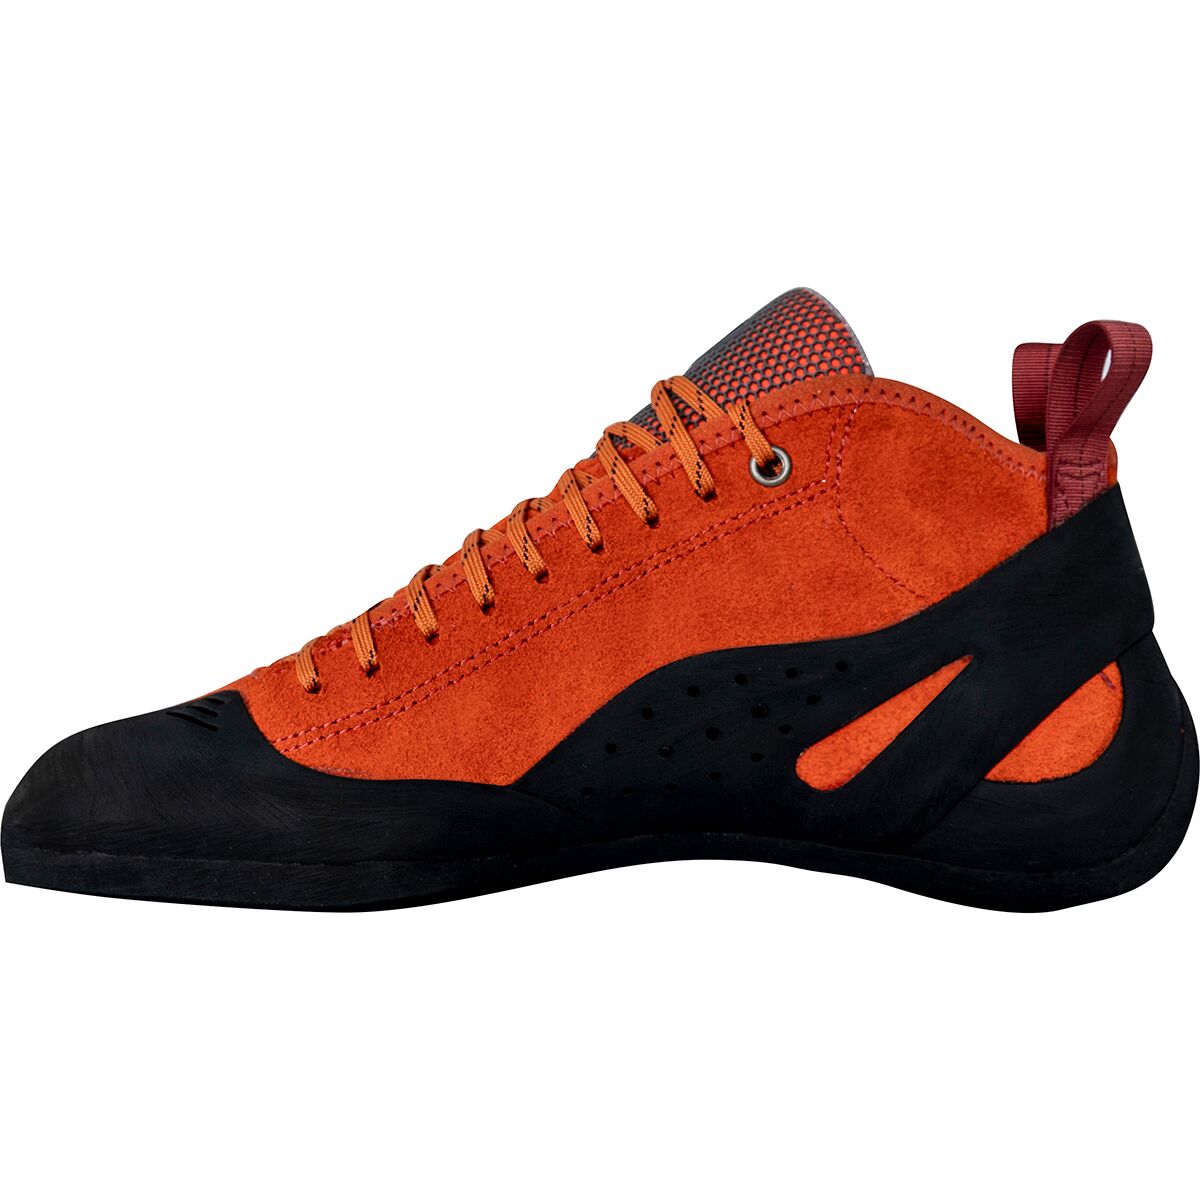 Обувь для скалолазания Altura - Плотная посадка Butora